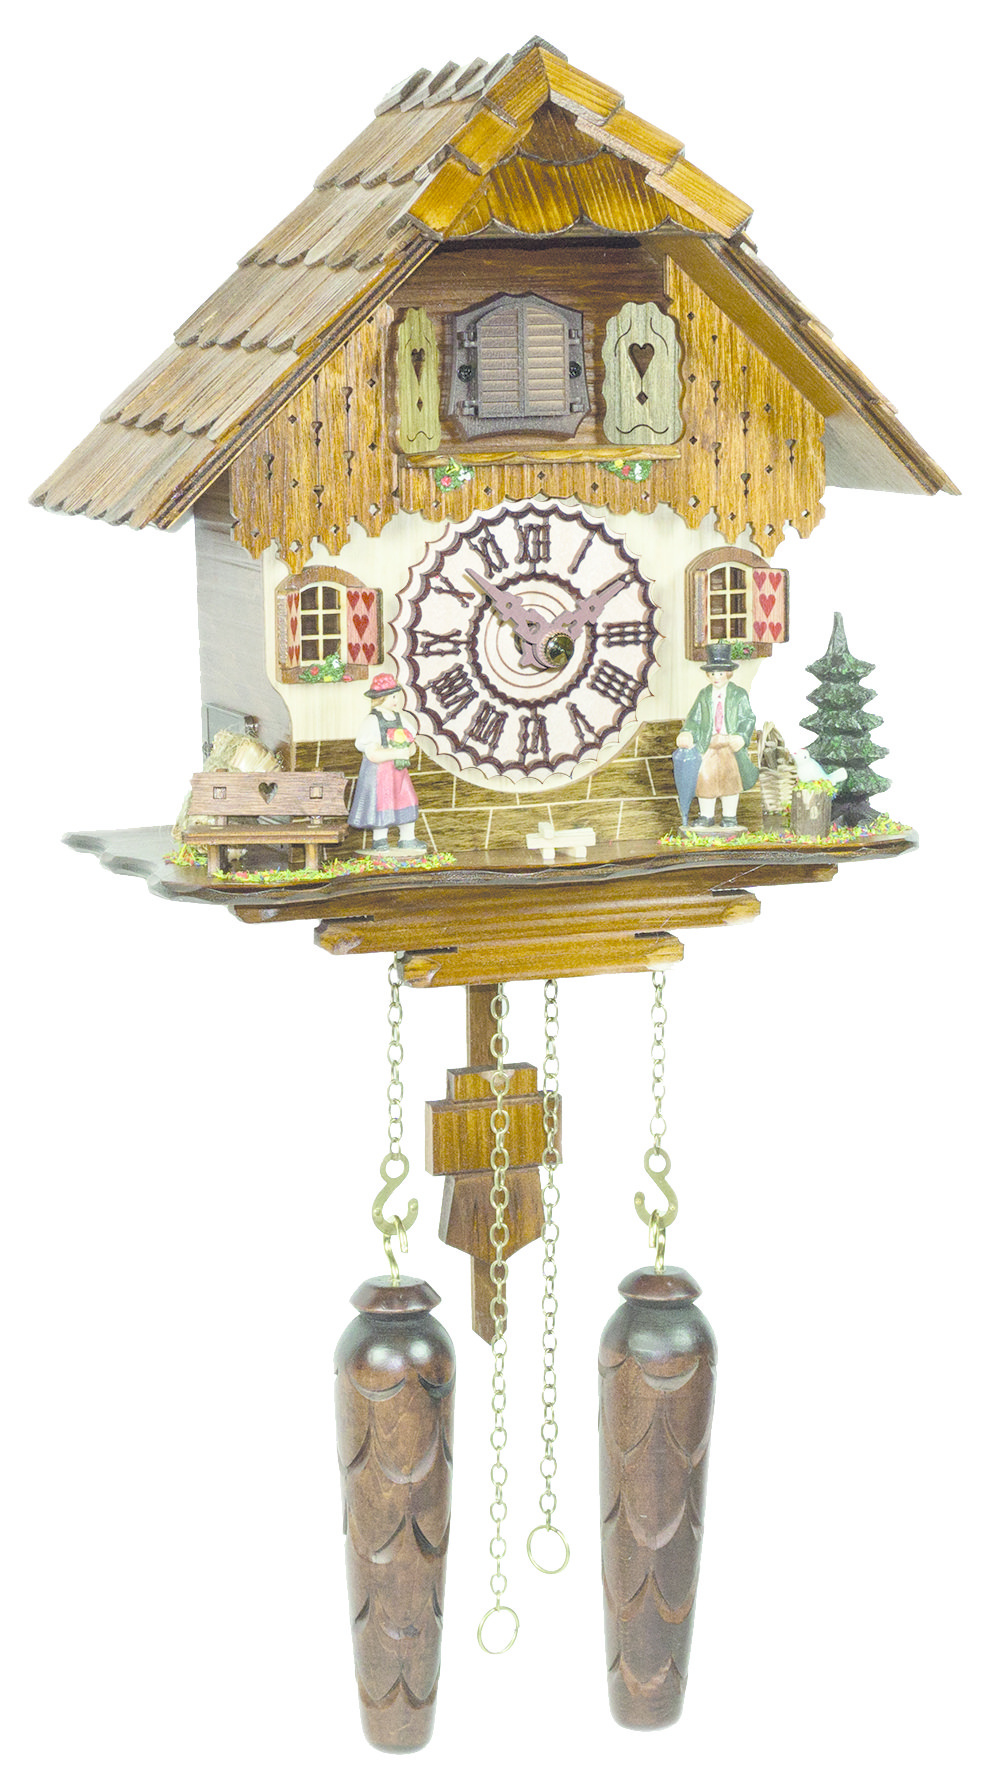 Maravilloso reloj de cuco de 25cm con techo de tejas de madera